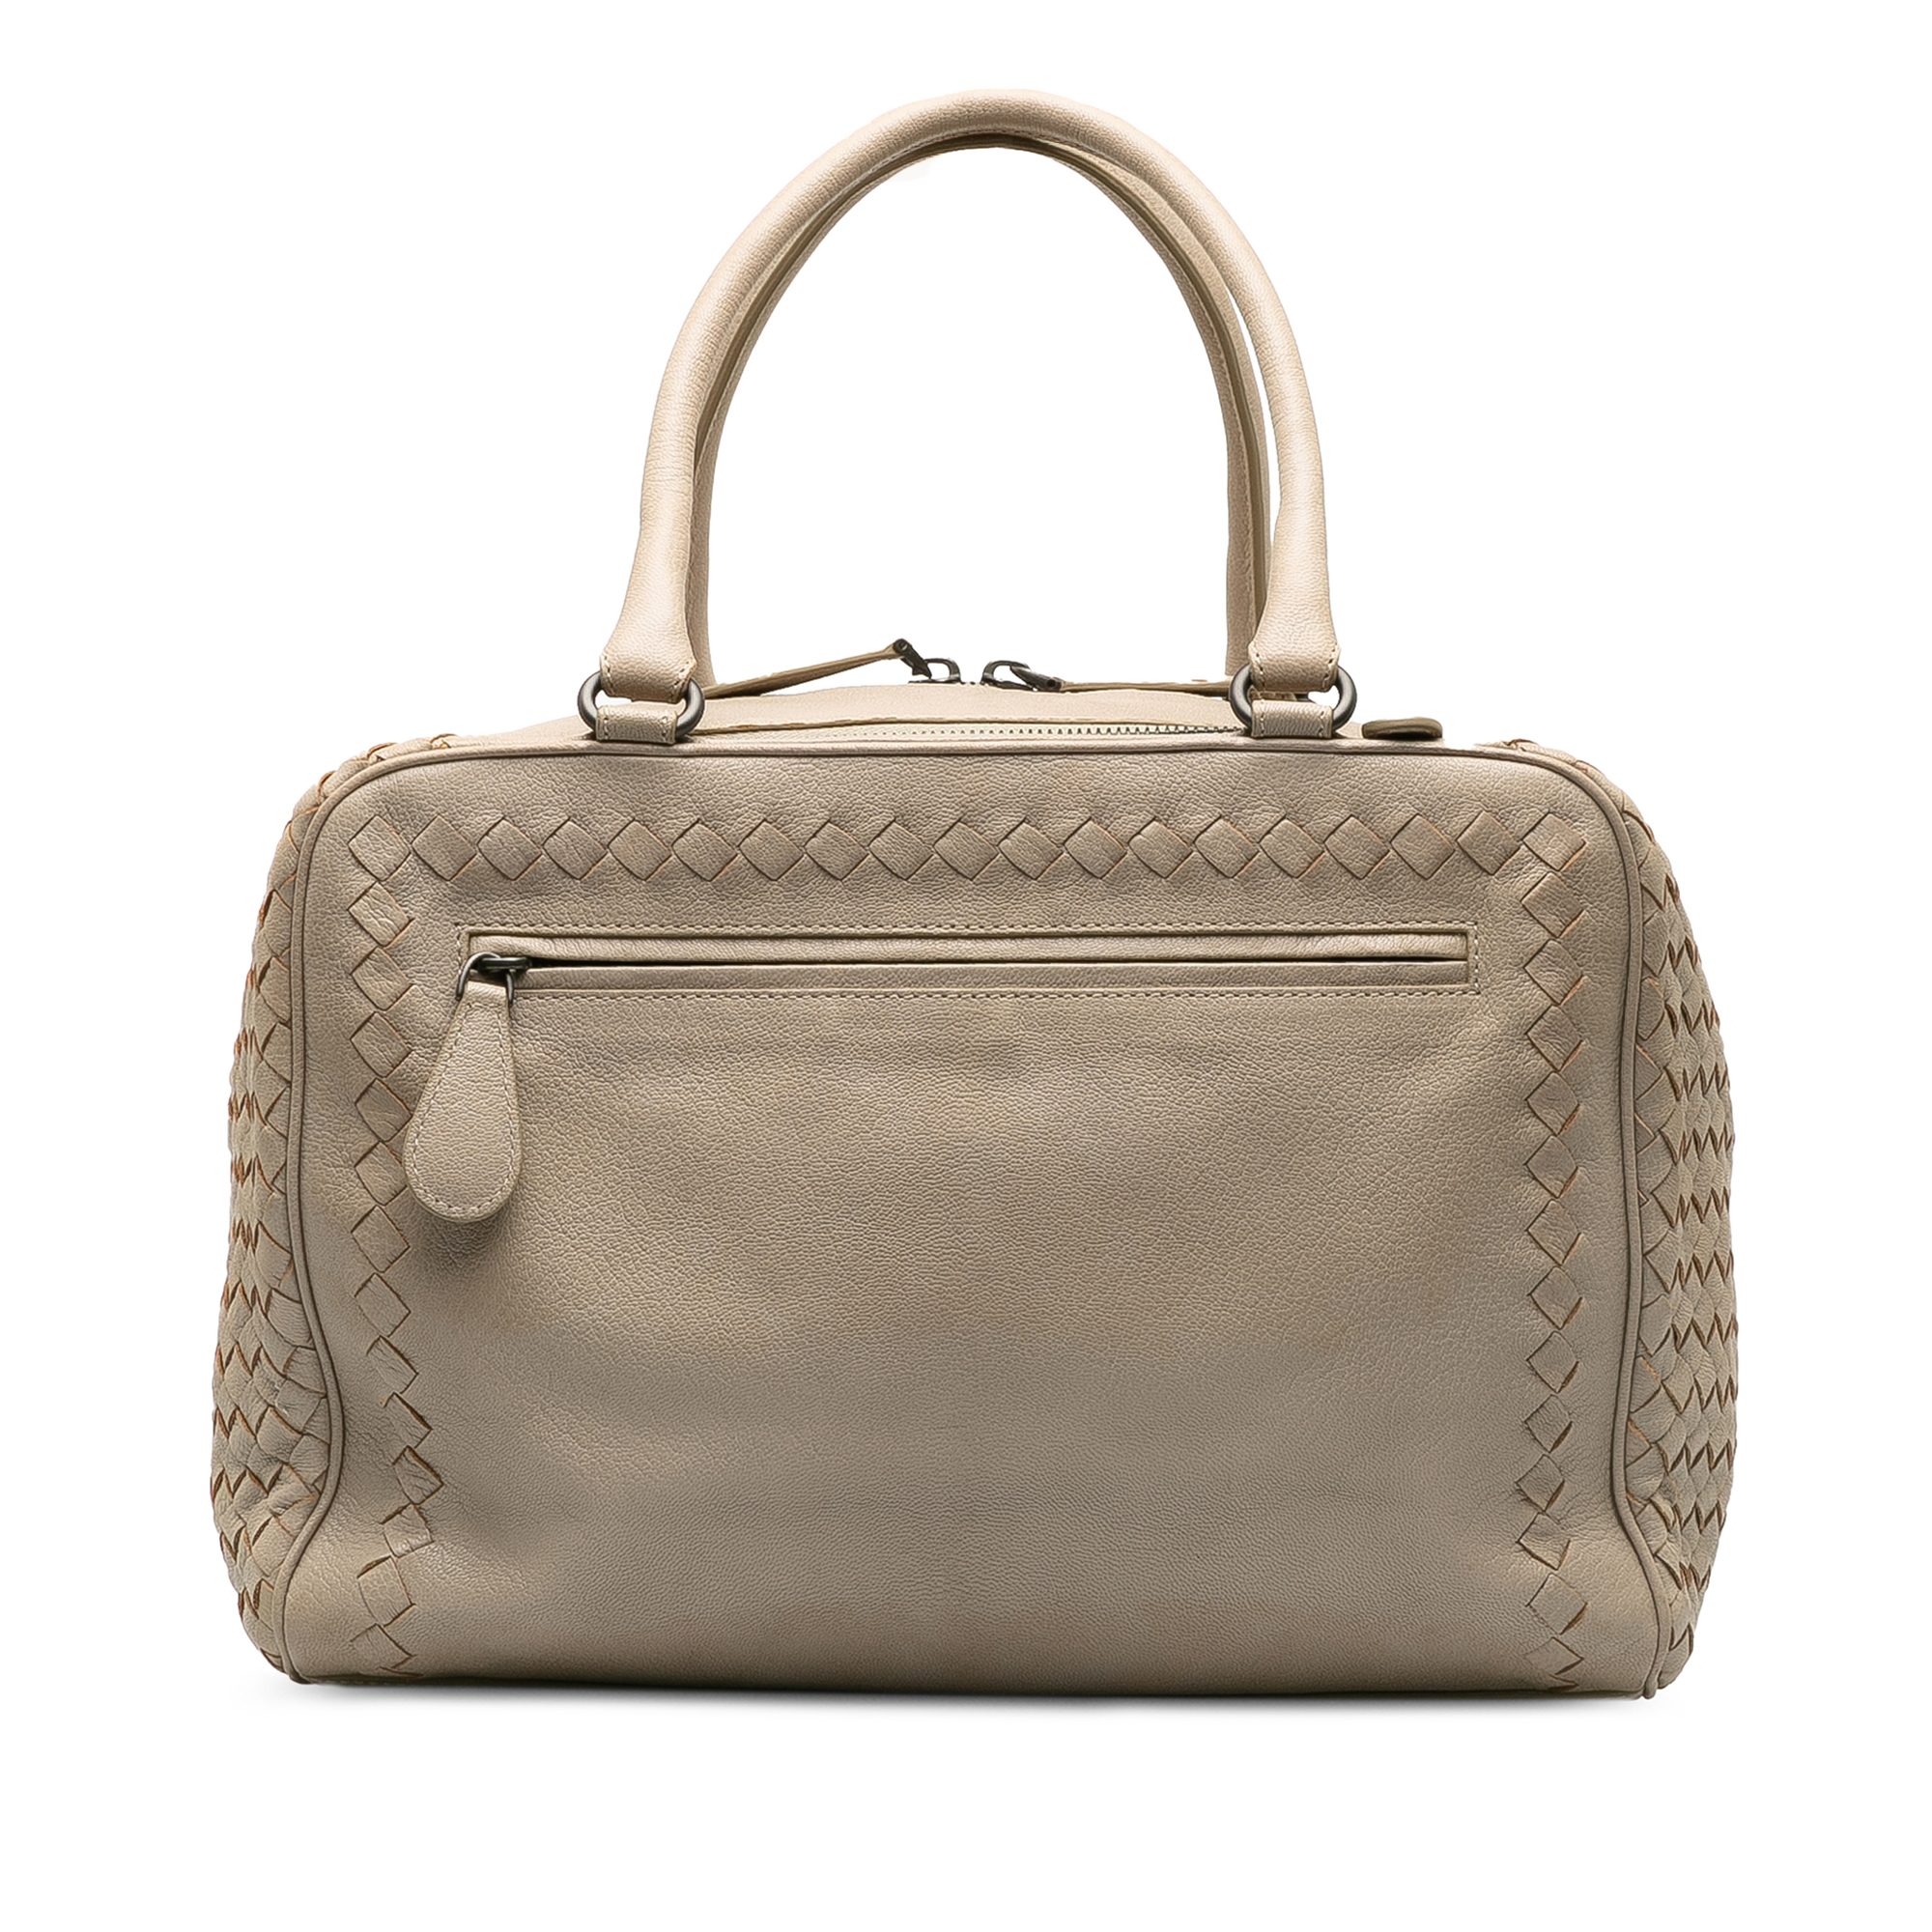 Bottega Veneta Intrecciato Handbag - Image 3 of 10